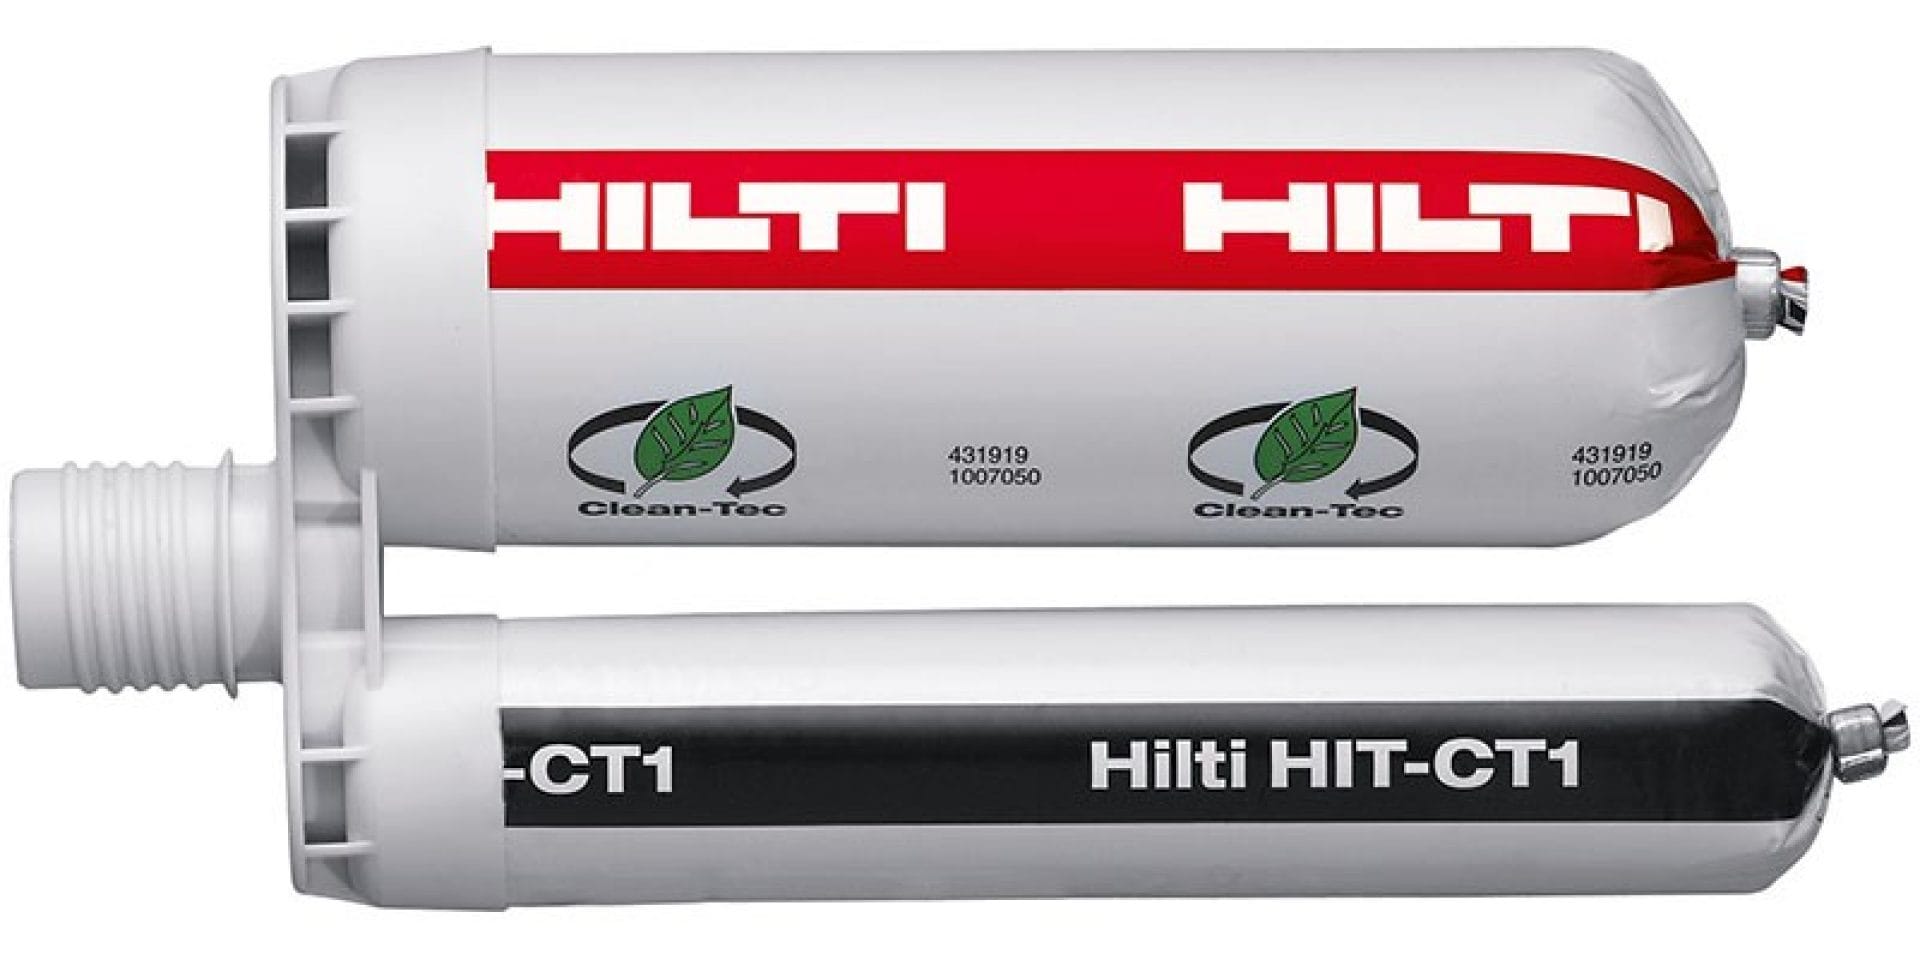 HIT-CT 1 miljögodkända massa för betong, ingår i Hilti SafeSet-system